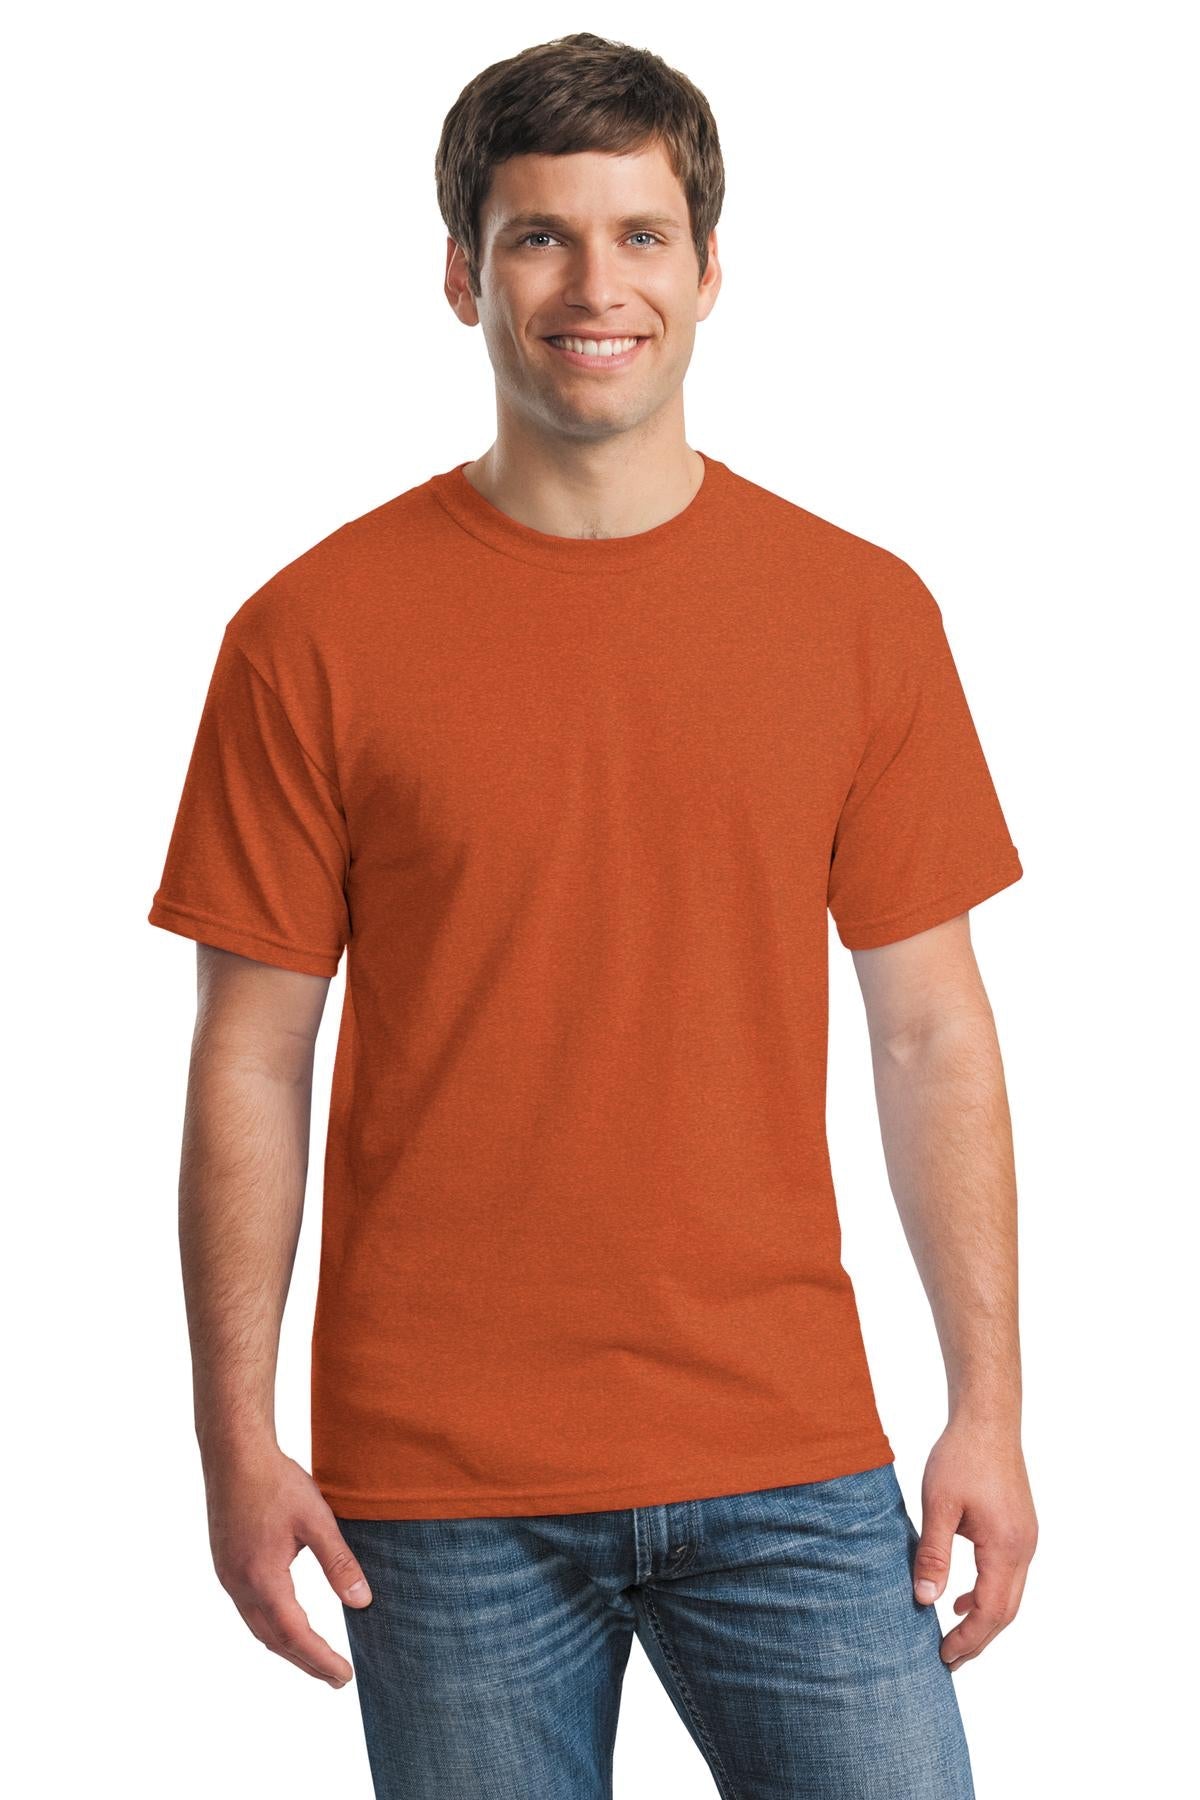 Gildan® - Heavy Cotton™ 100% Cotton T-Shirt. 5000 [Antique Orange] - DFW Impression